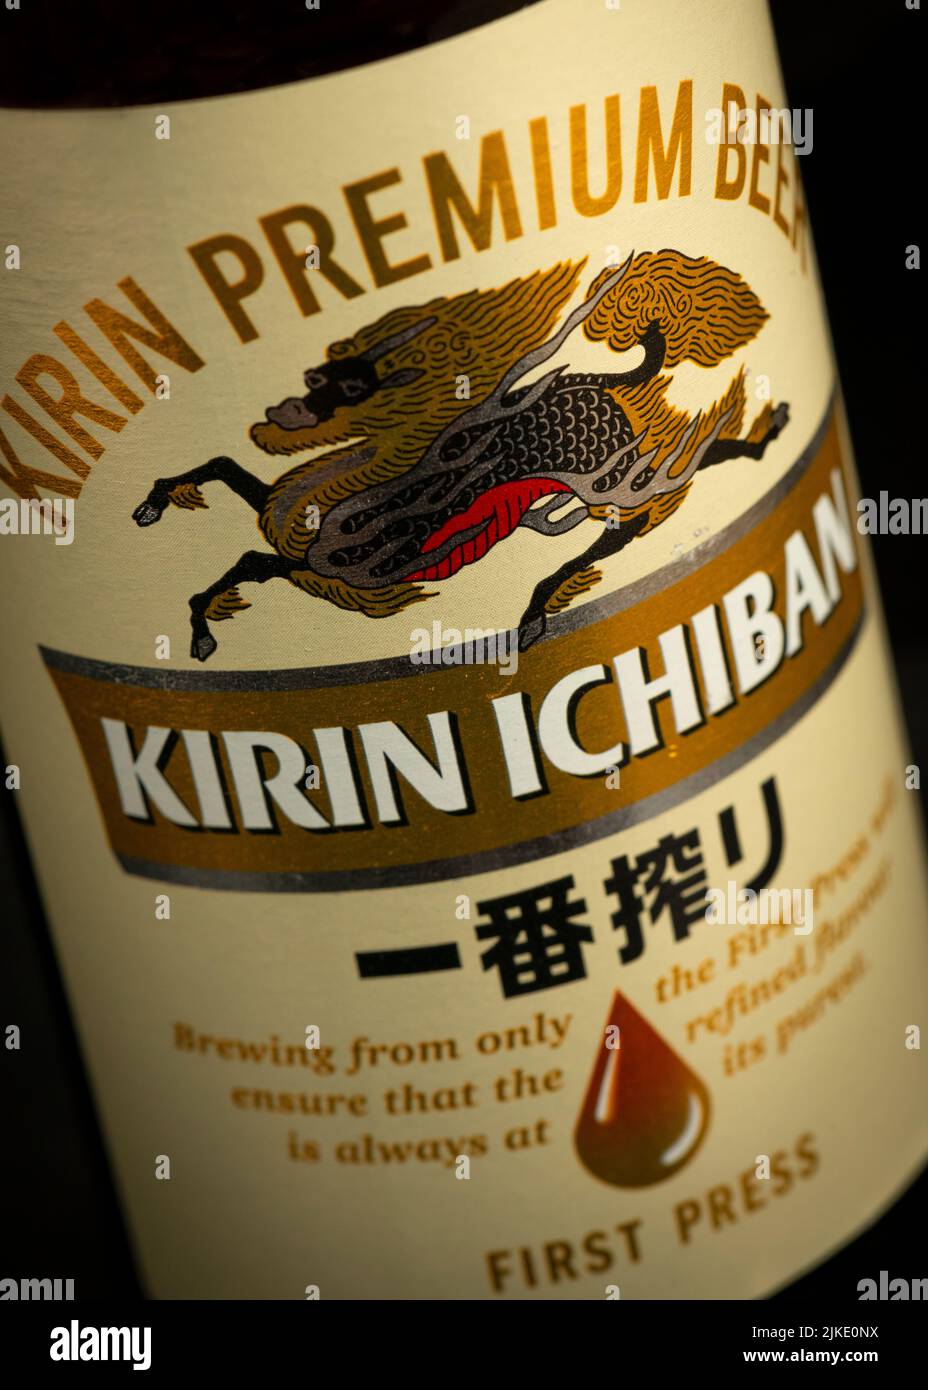 Kirin Ichiban Japanese lager beer bottle label close up detail Stock Photo